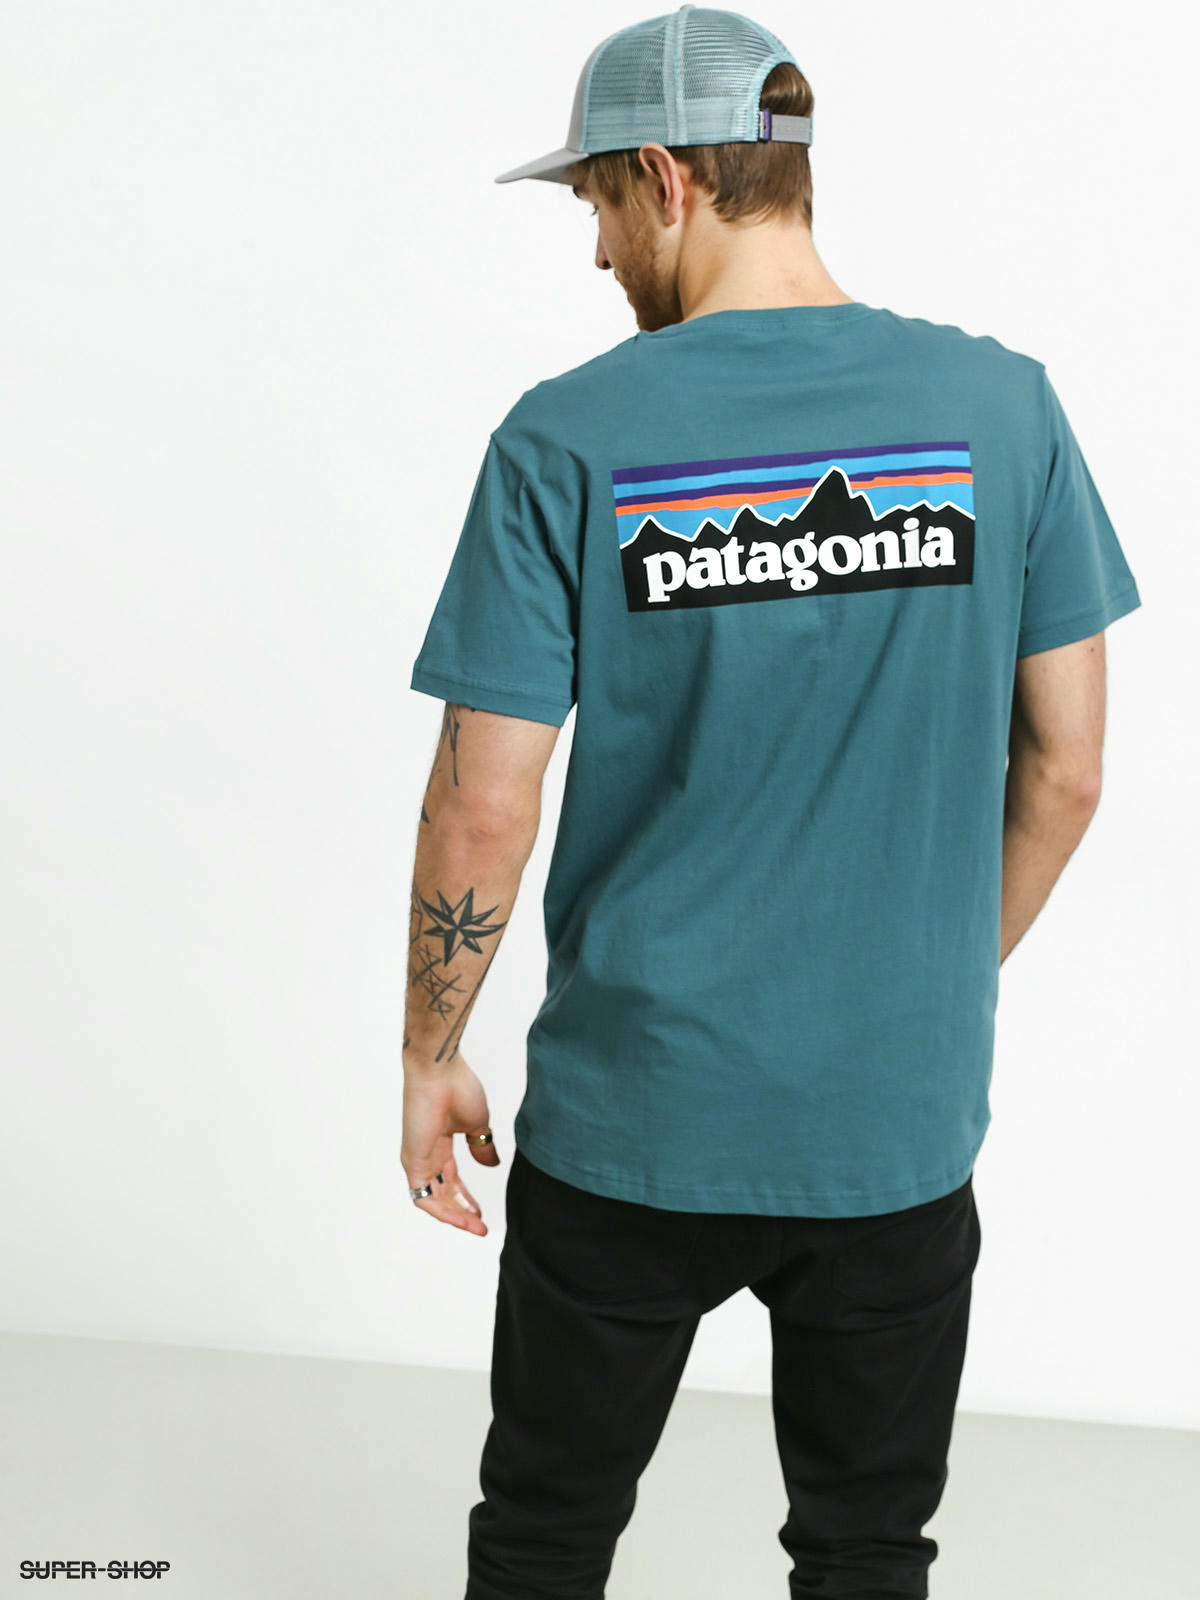 patagonia baseball shirt